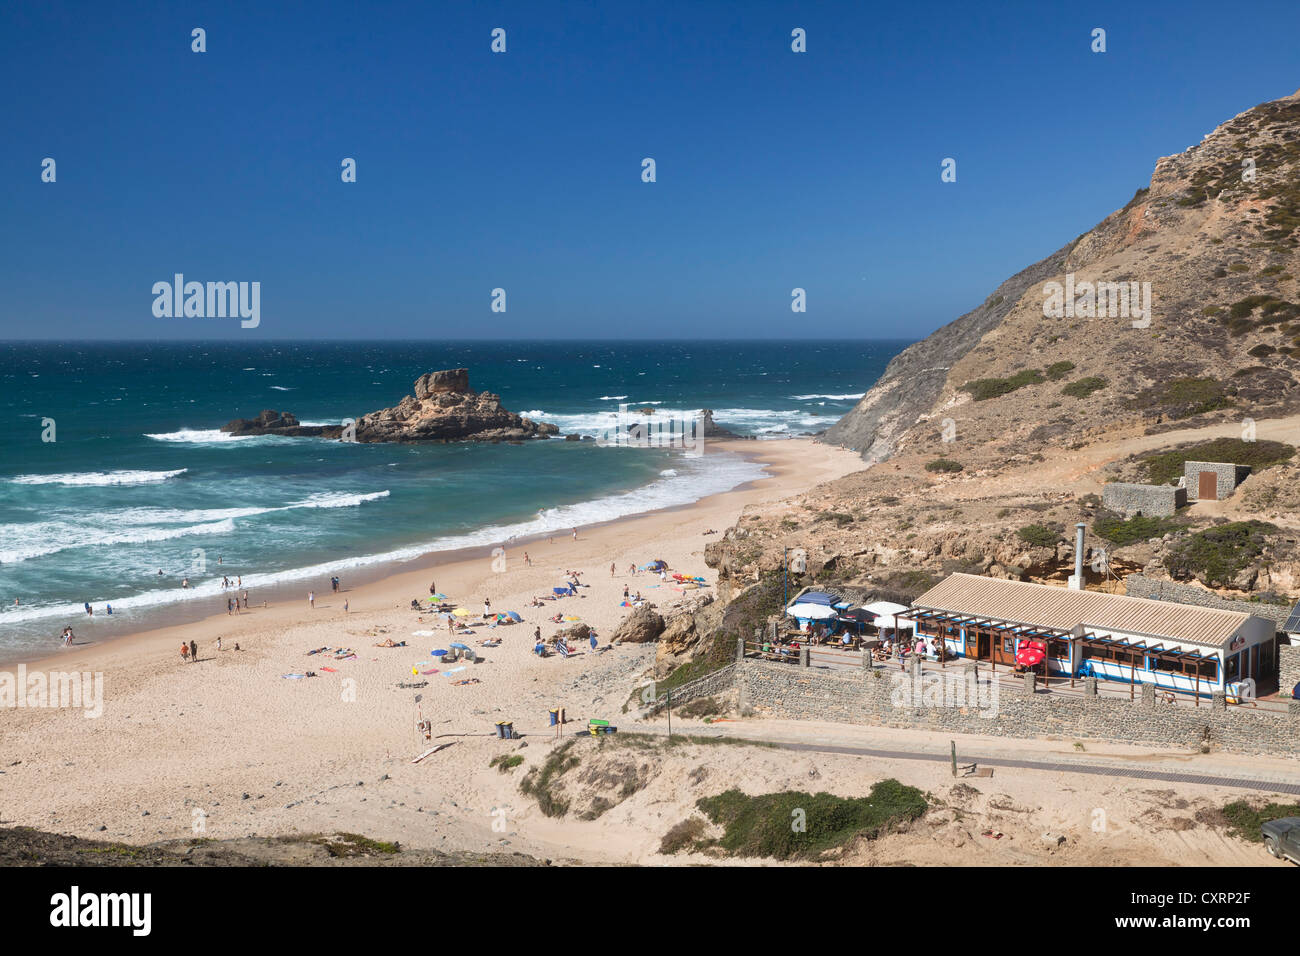 Spiaggia di Praia da Castelejo, costa atlantica, Algarve, Portogallo, Europa Foto Stock